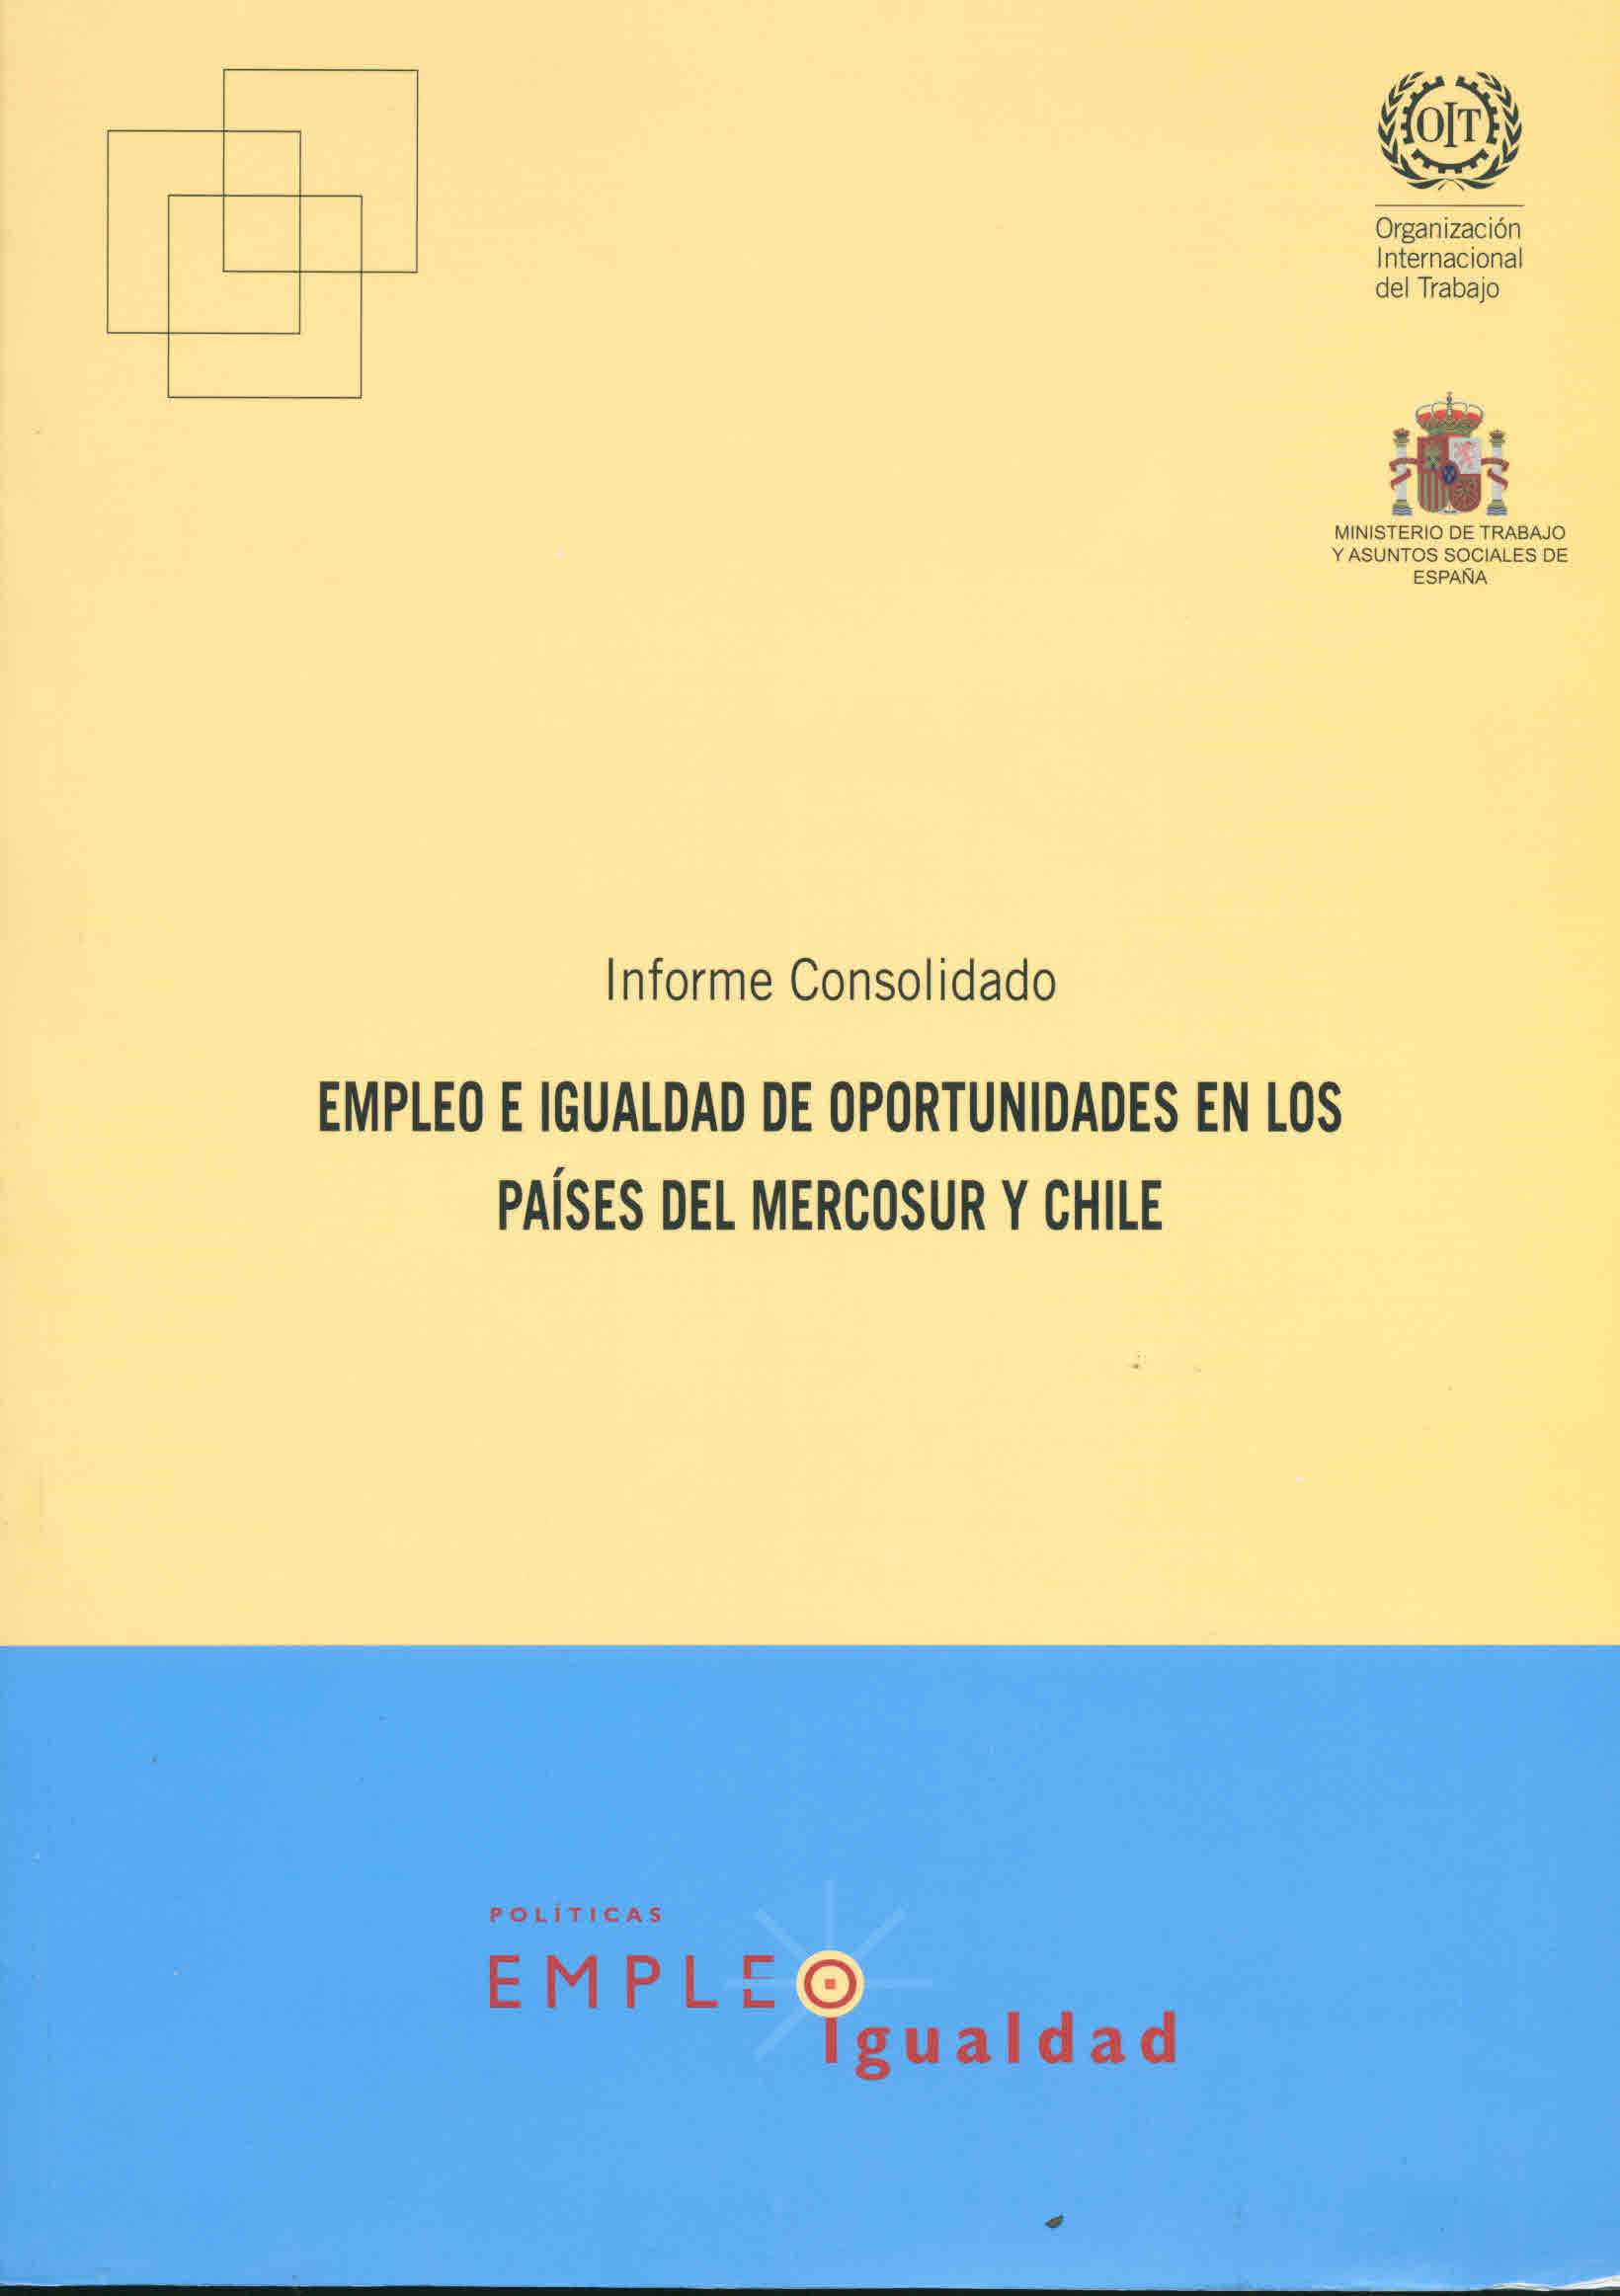 Informe consolidado. Empleo e igualdad de oportunidades en los países del mercosur y Chile